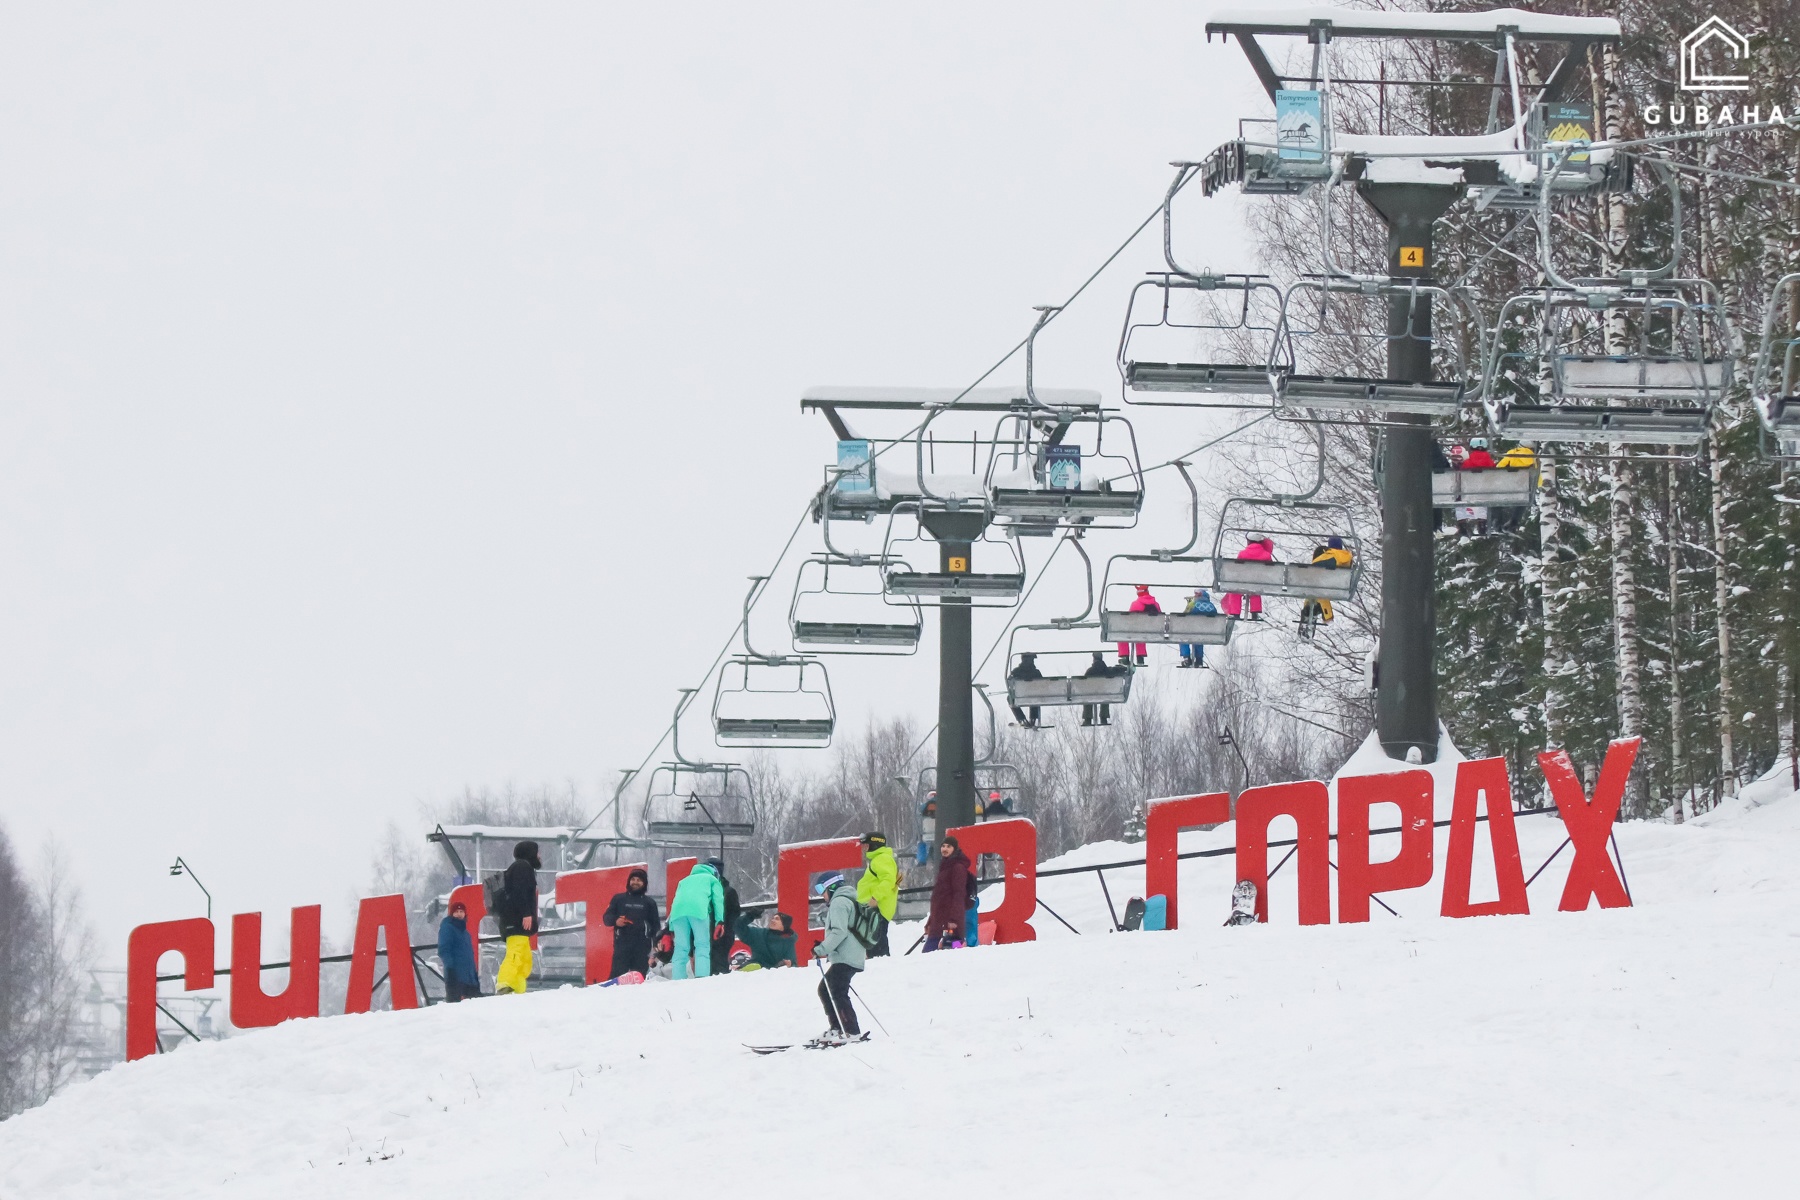 Согласована передача горнолыжного курорта «Губаха» в собственность Пермского края  